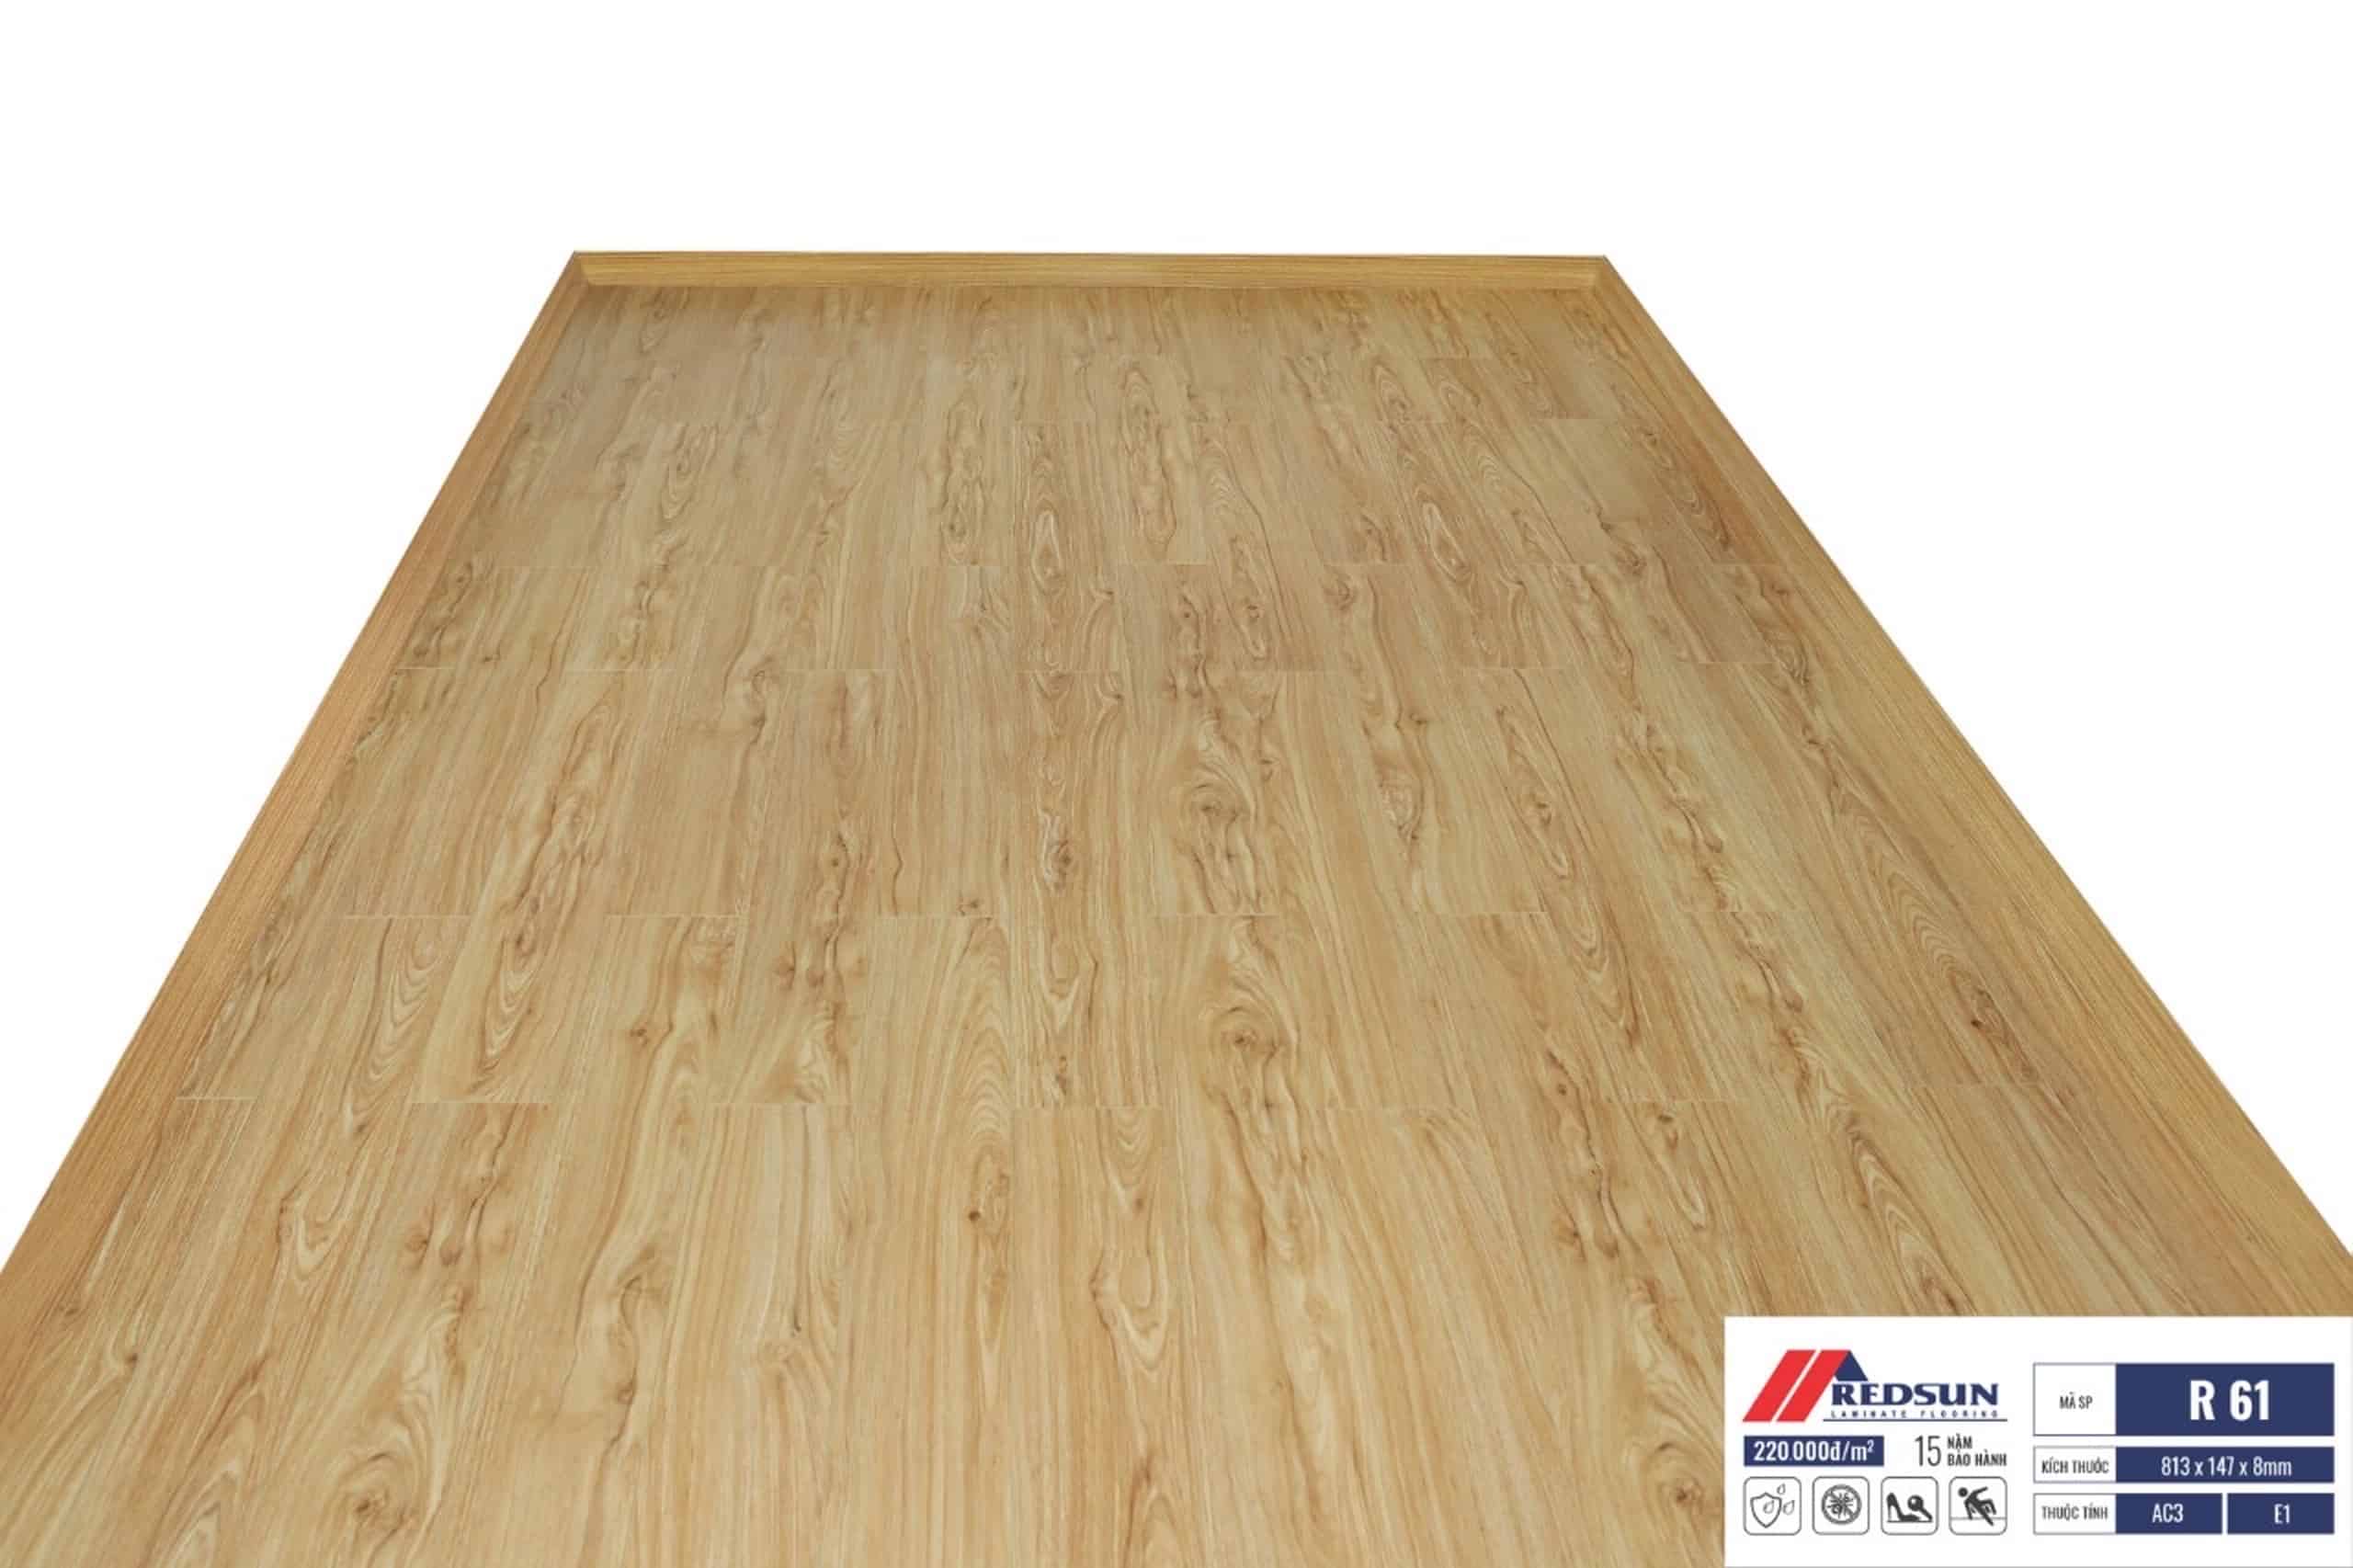 Công trình hoàn thiện sử dụng sàn gỗ Redsun R61